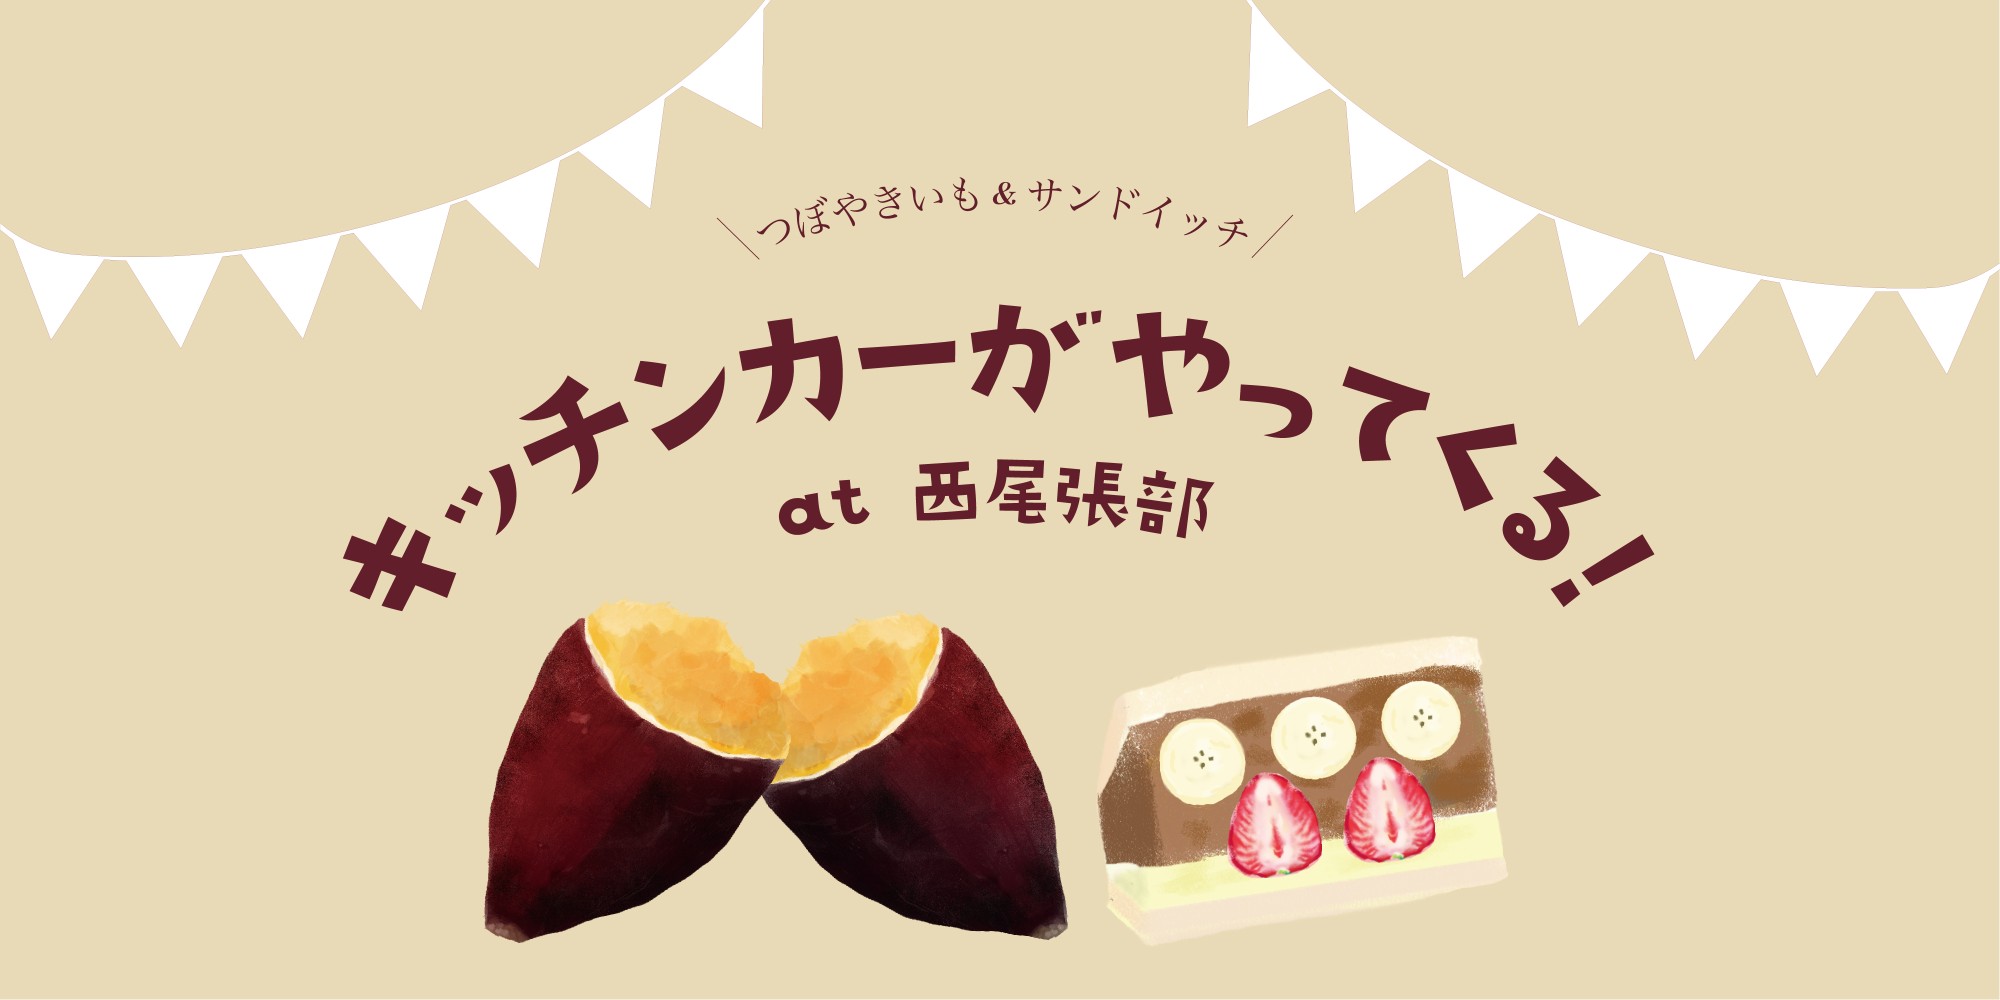 3月6日「長野住宅展示場」にキッチンカーがきます！